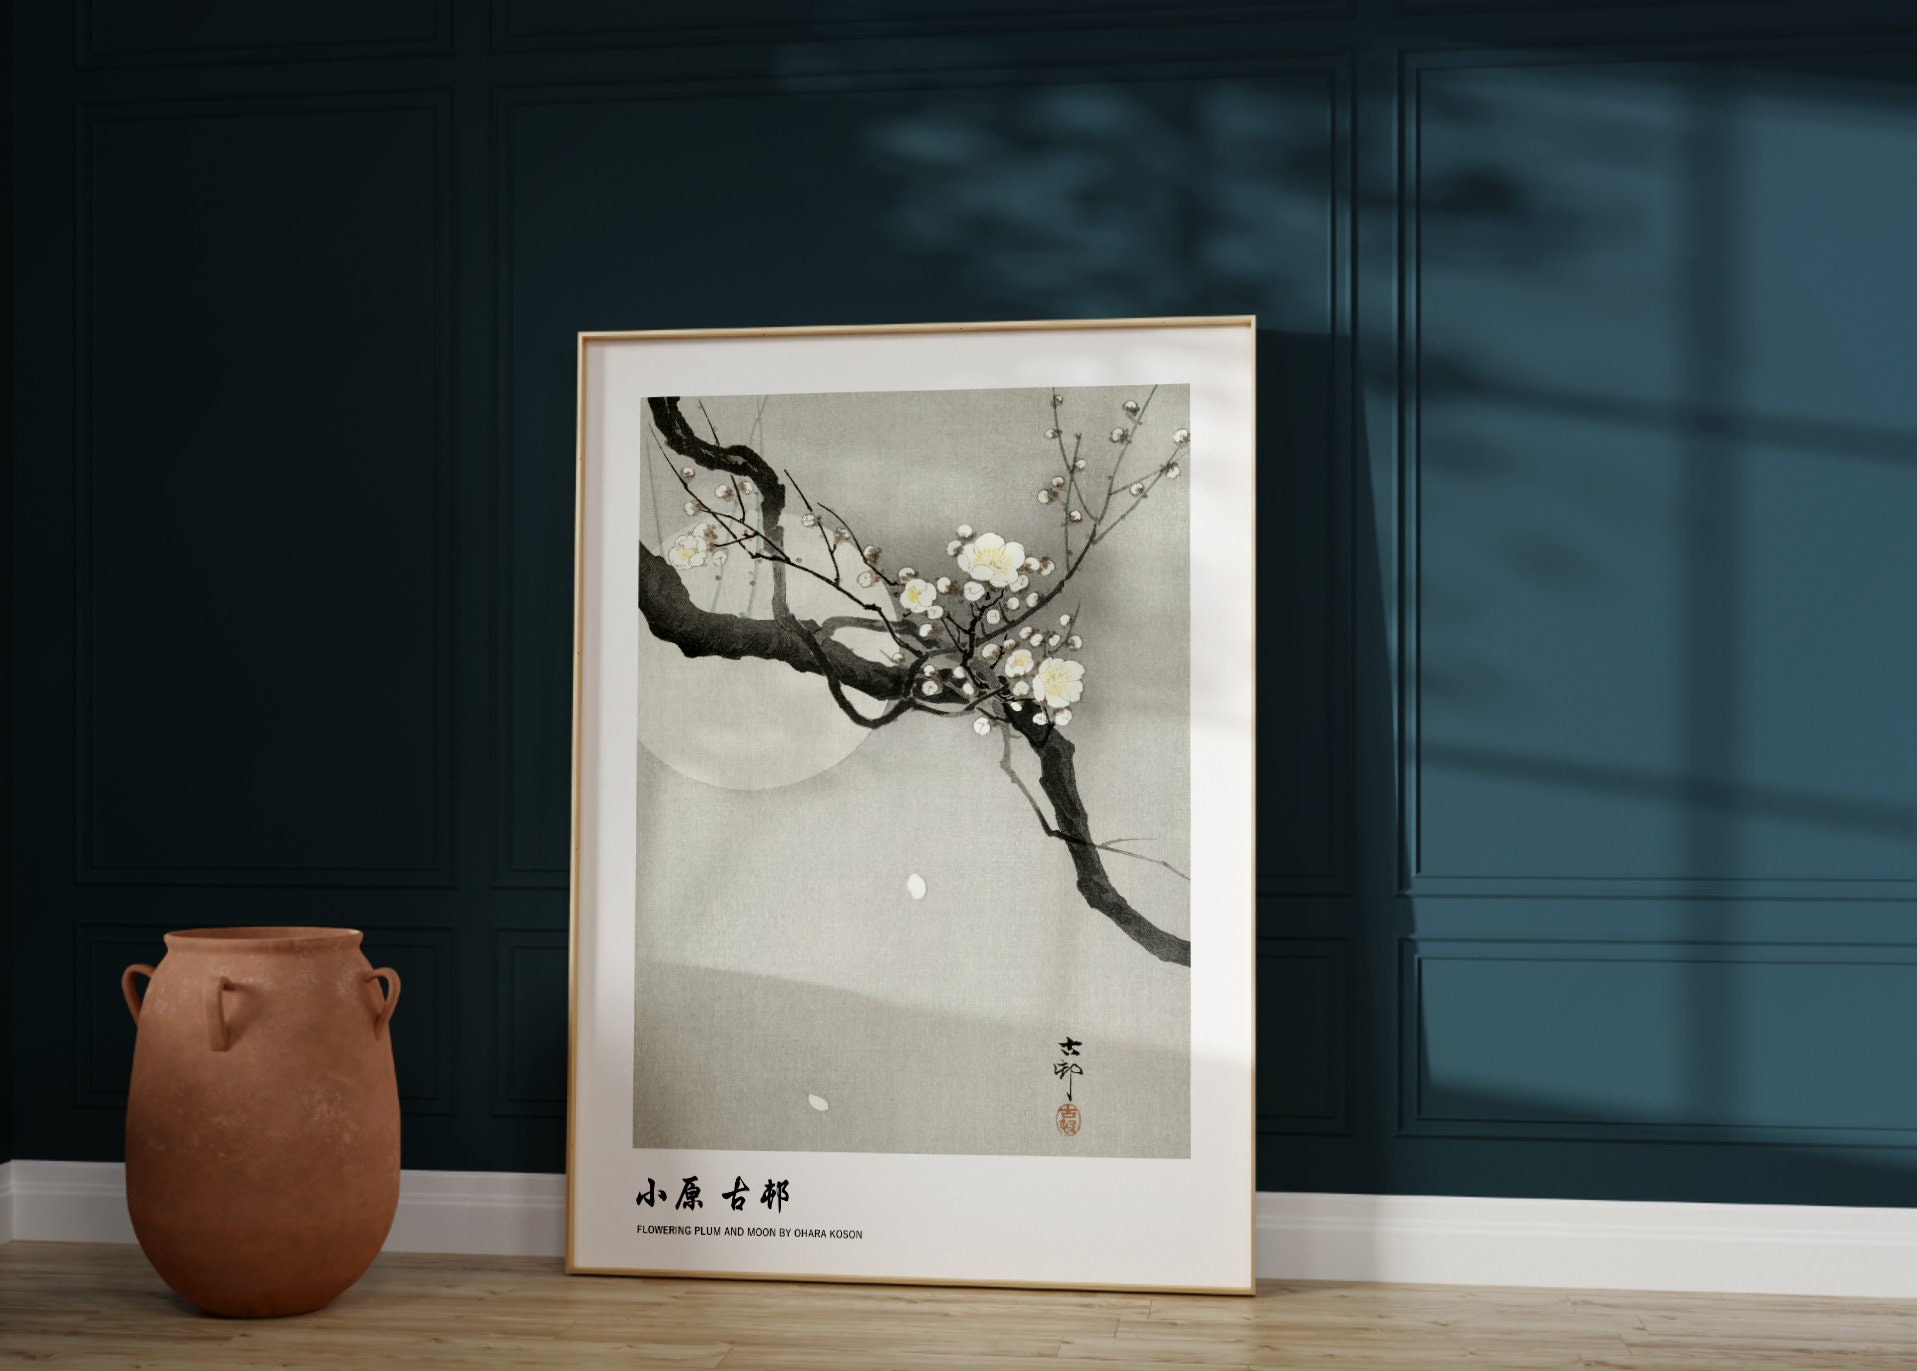 Poster Zen | Wall Art, Gifts & Merchandise 